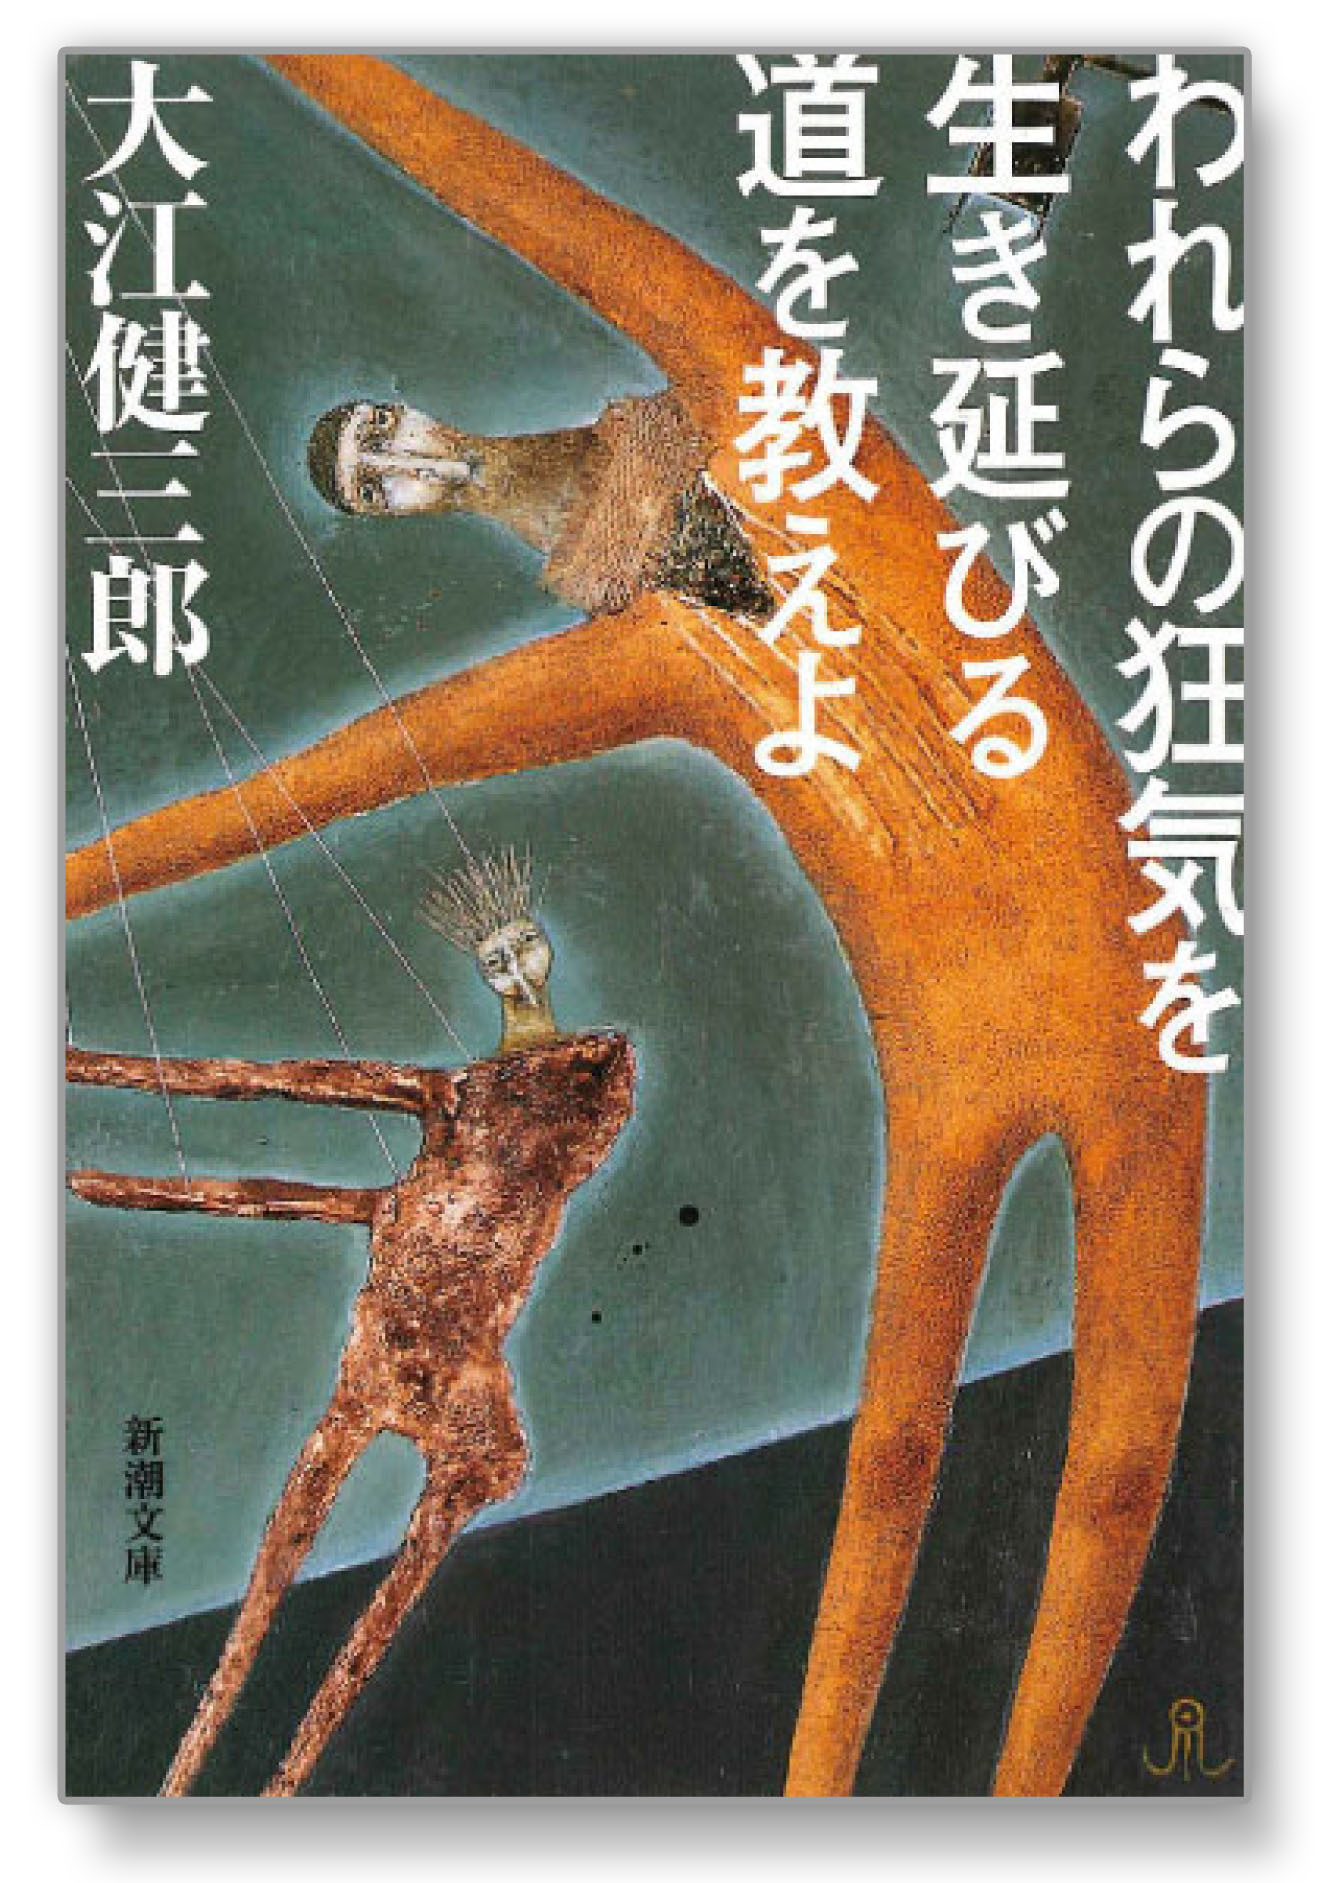 重版未定 川崎昌平さんが選んだ４冊の本 ブレーンデジタル版